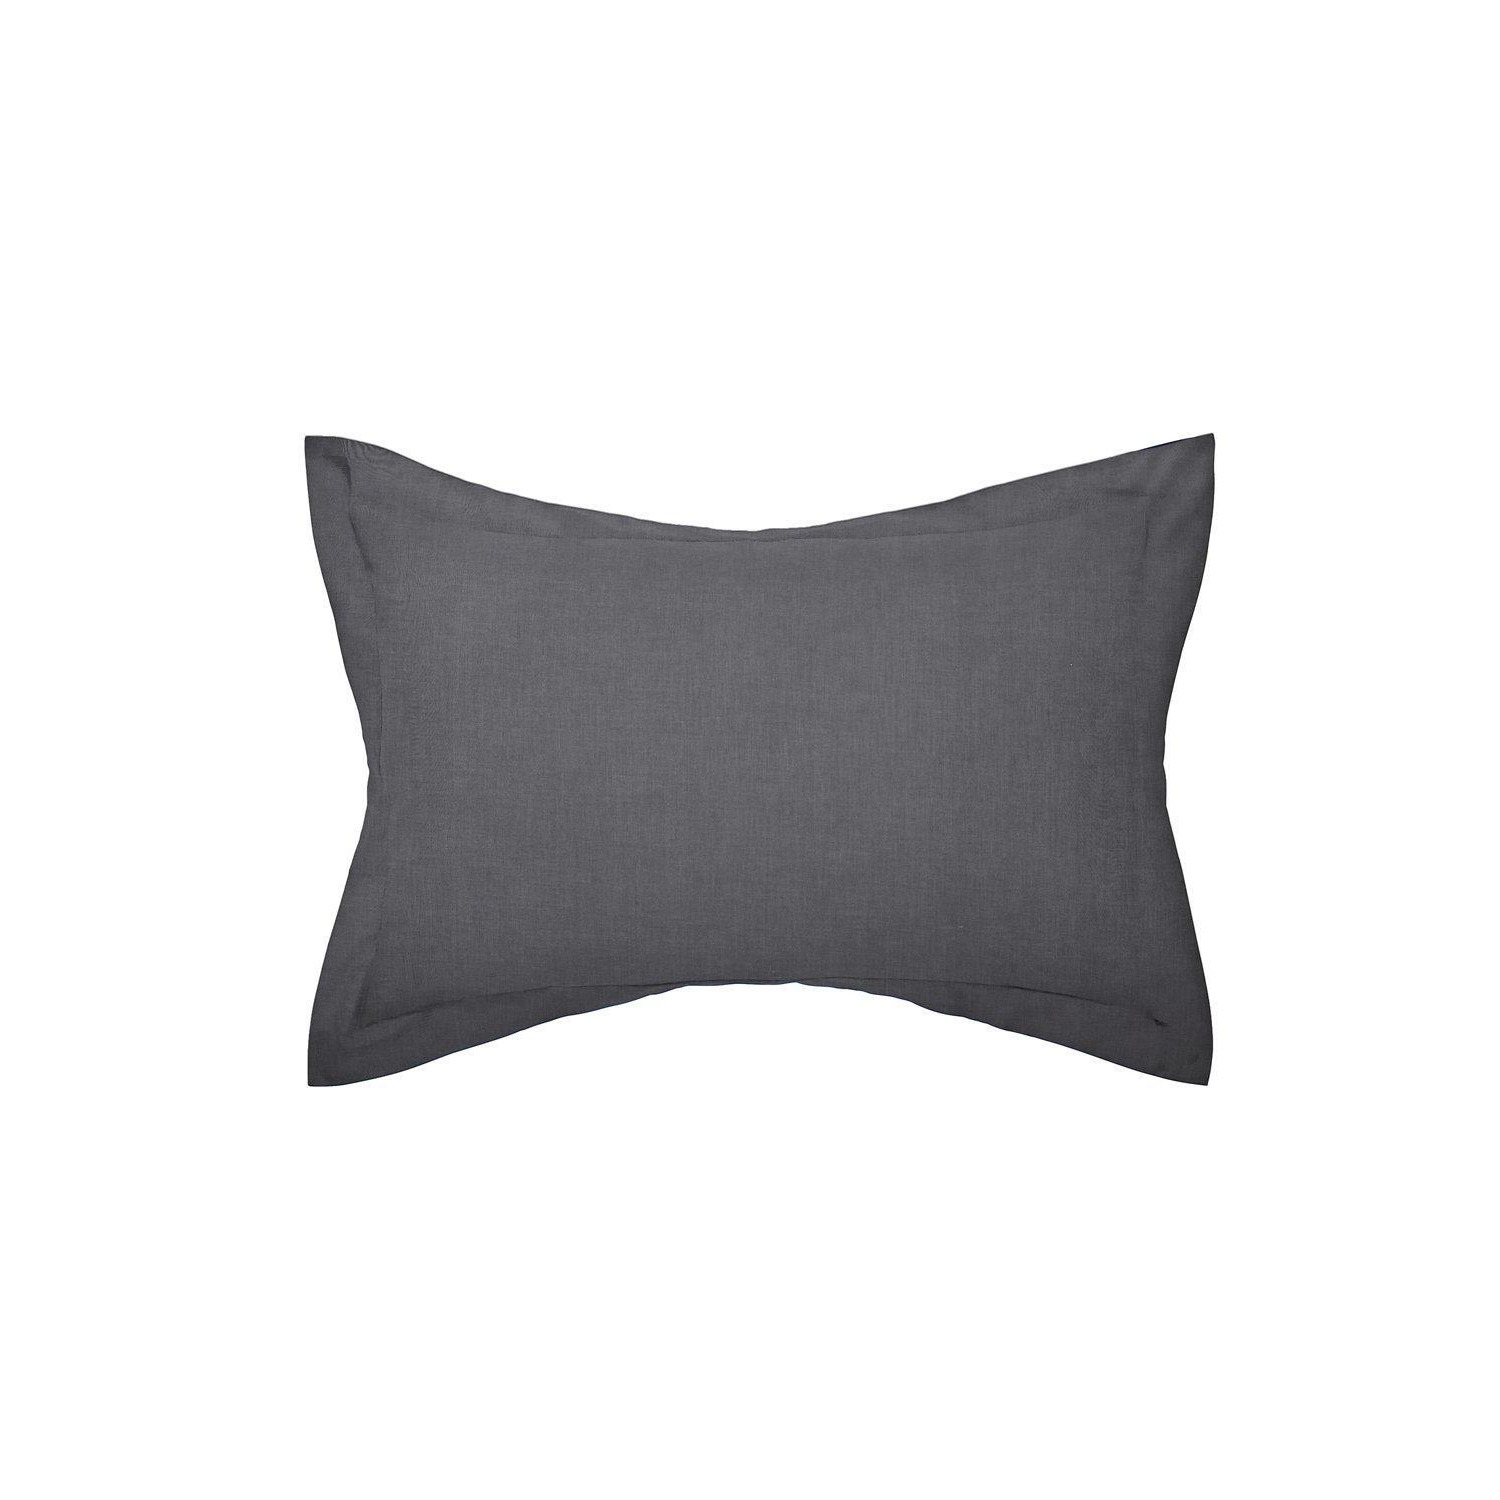 'Plain Dye' Polycotton Oxford Pillowcase - image 1